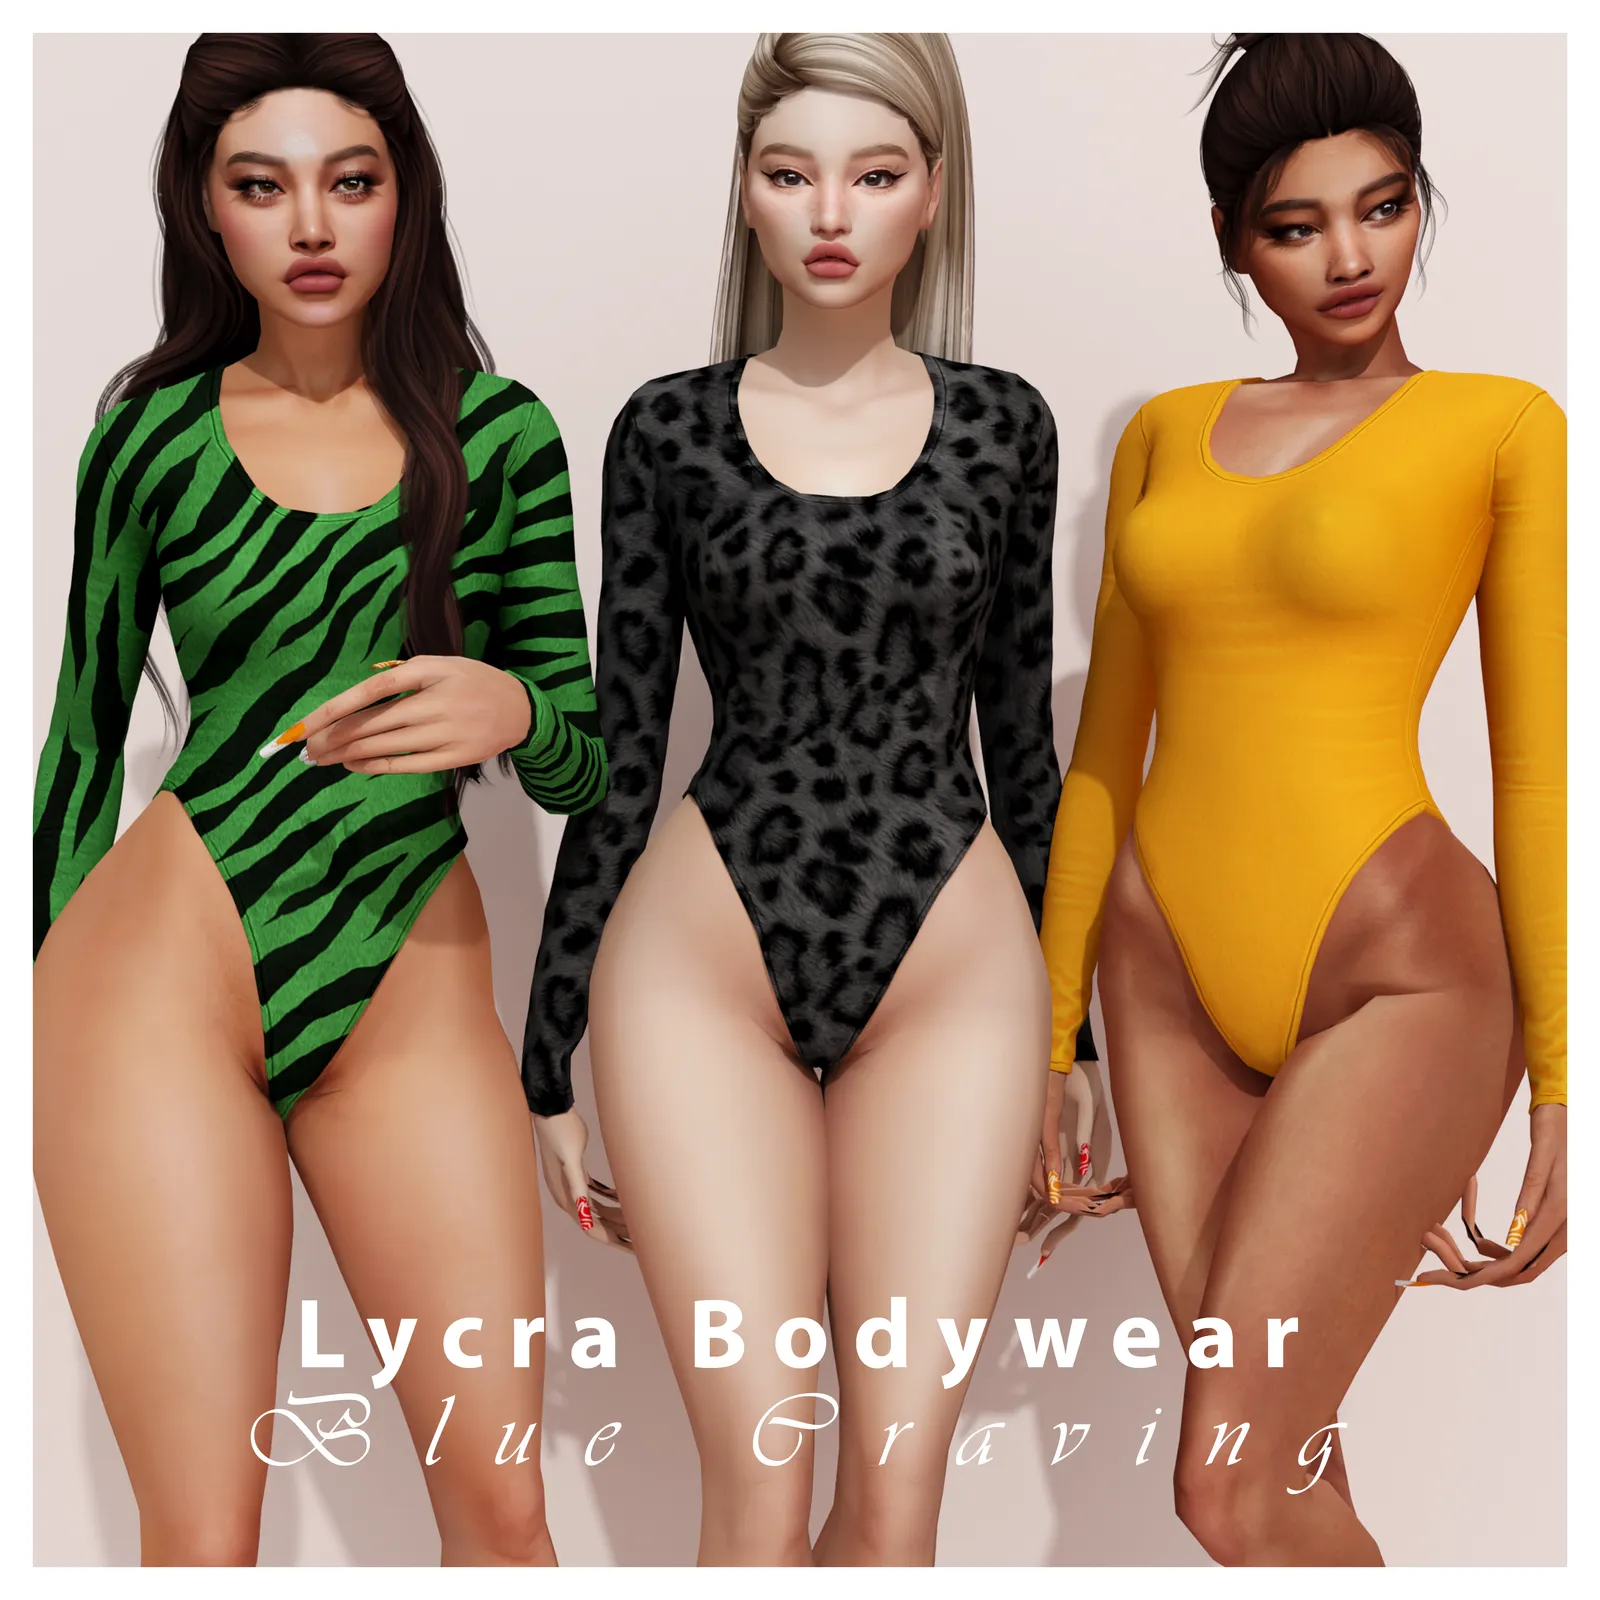 Lycra Bodywear